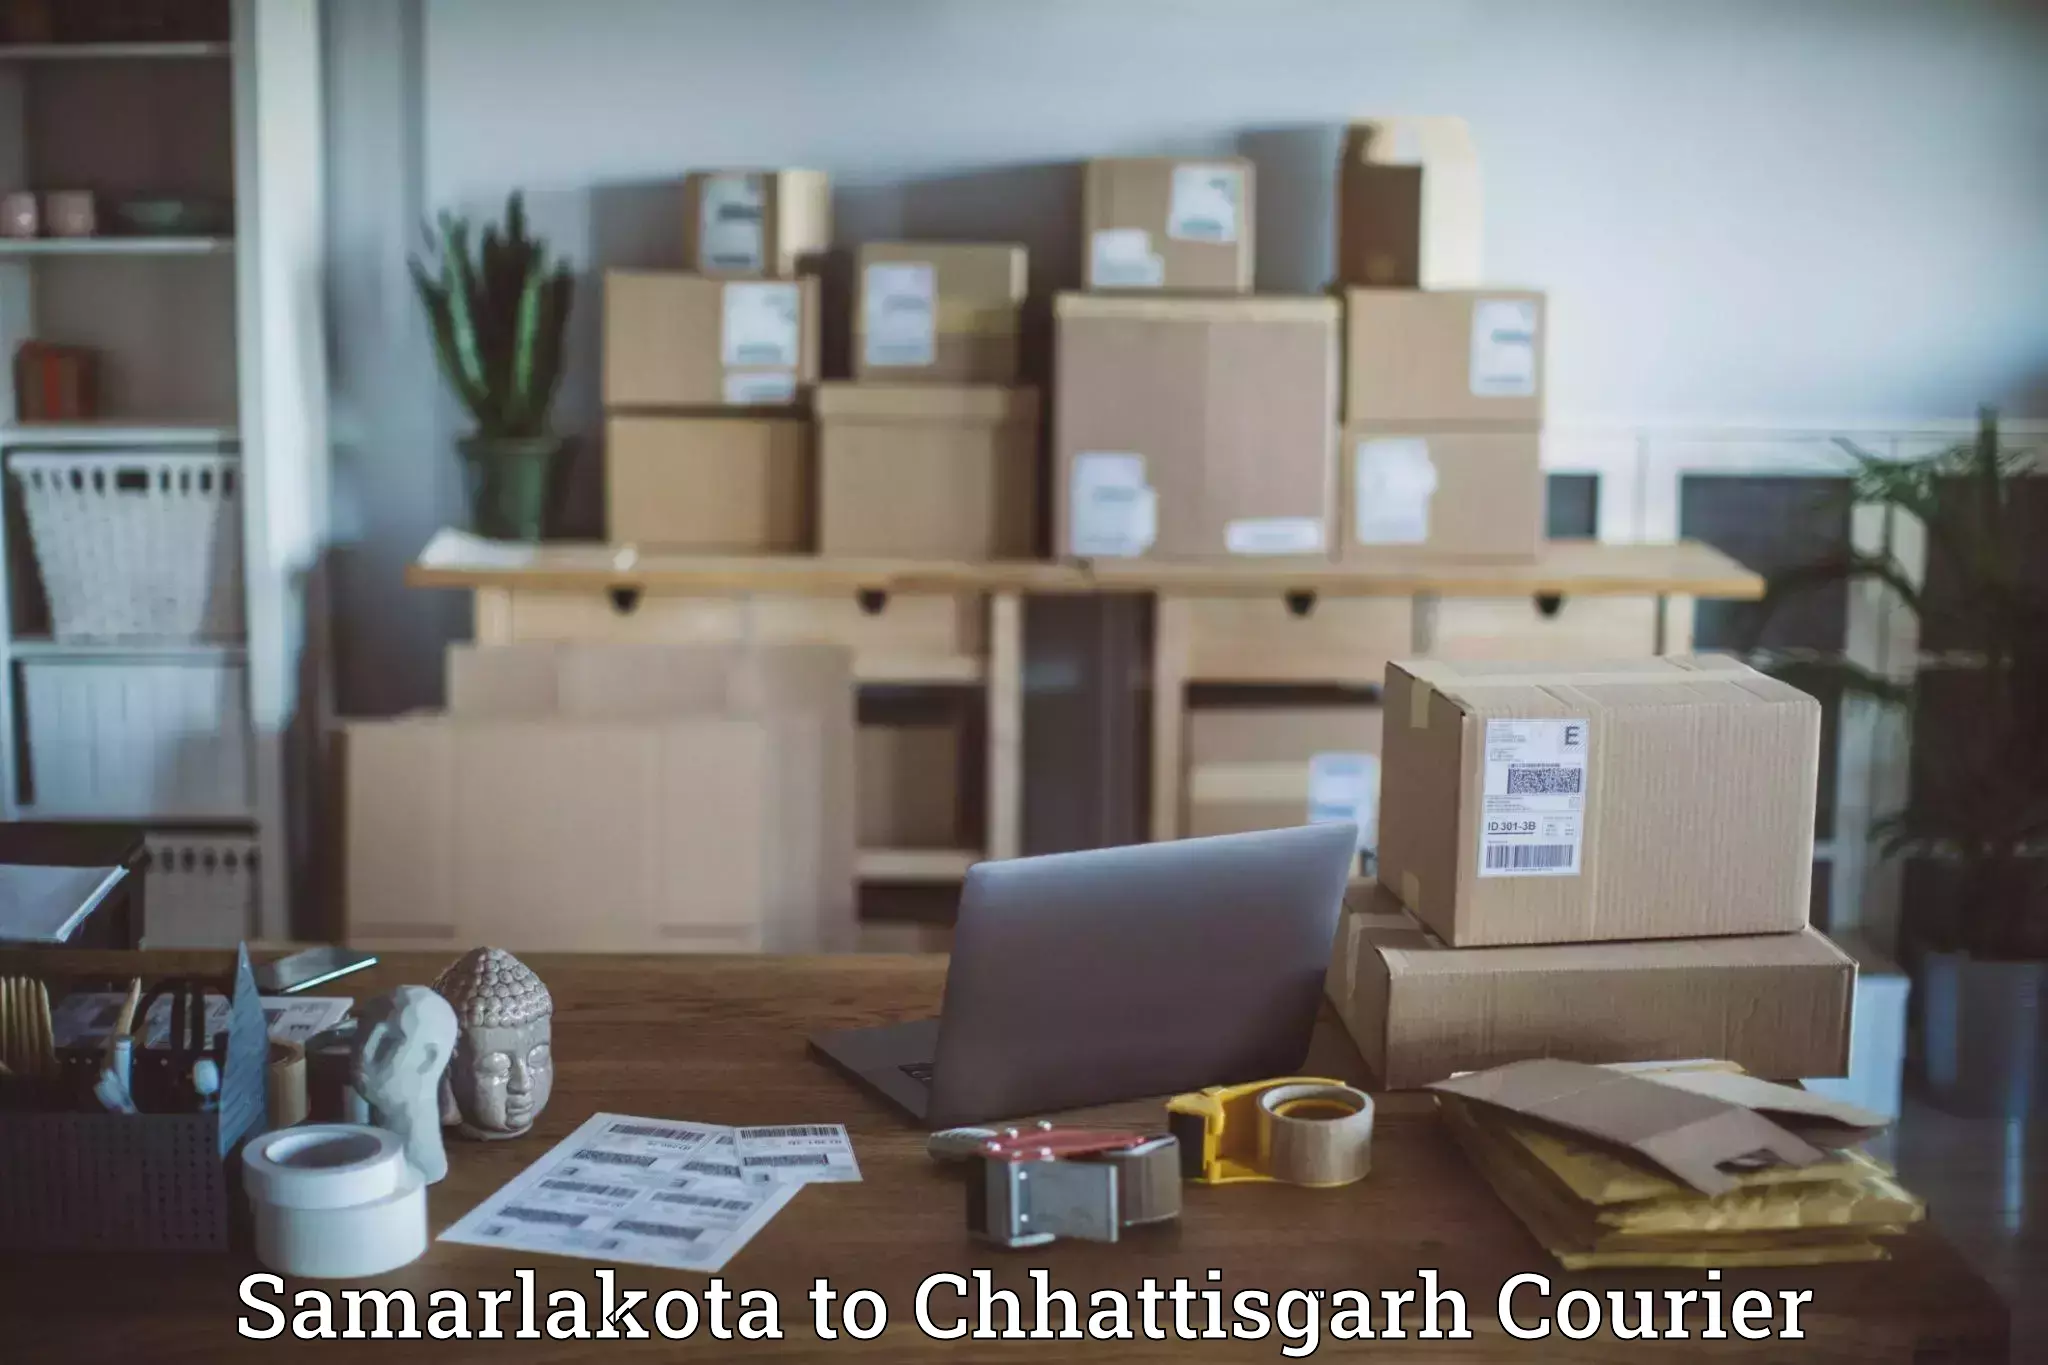 Multi-national courier services Samarlakota to Pakhanjur